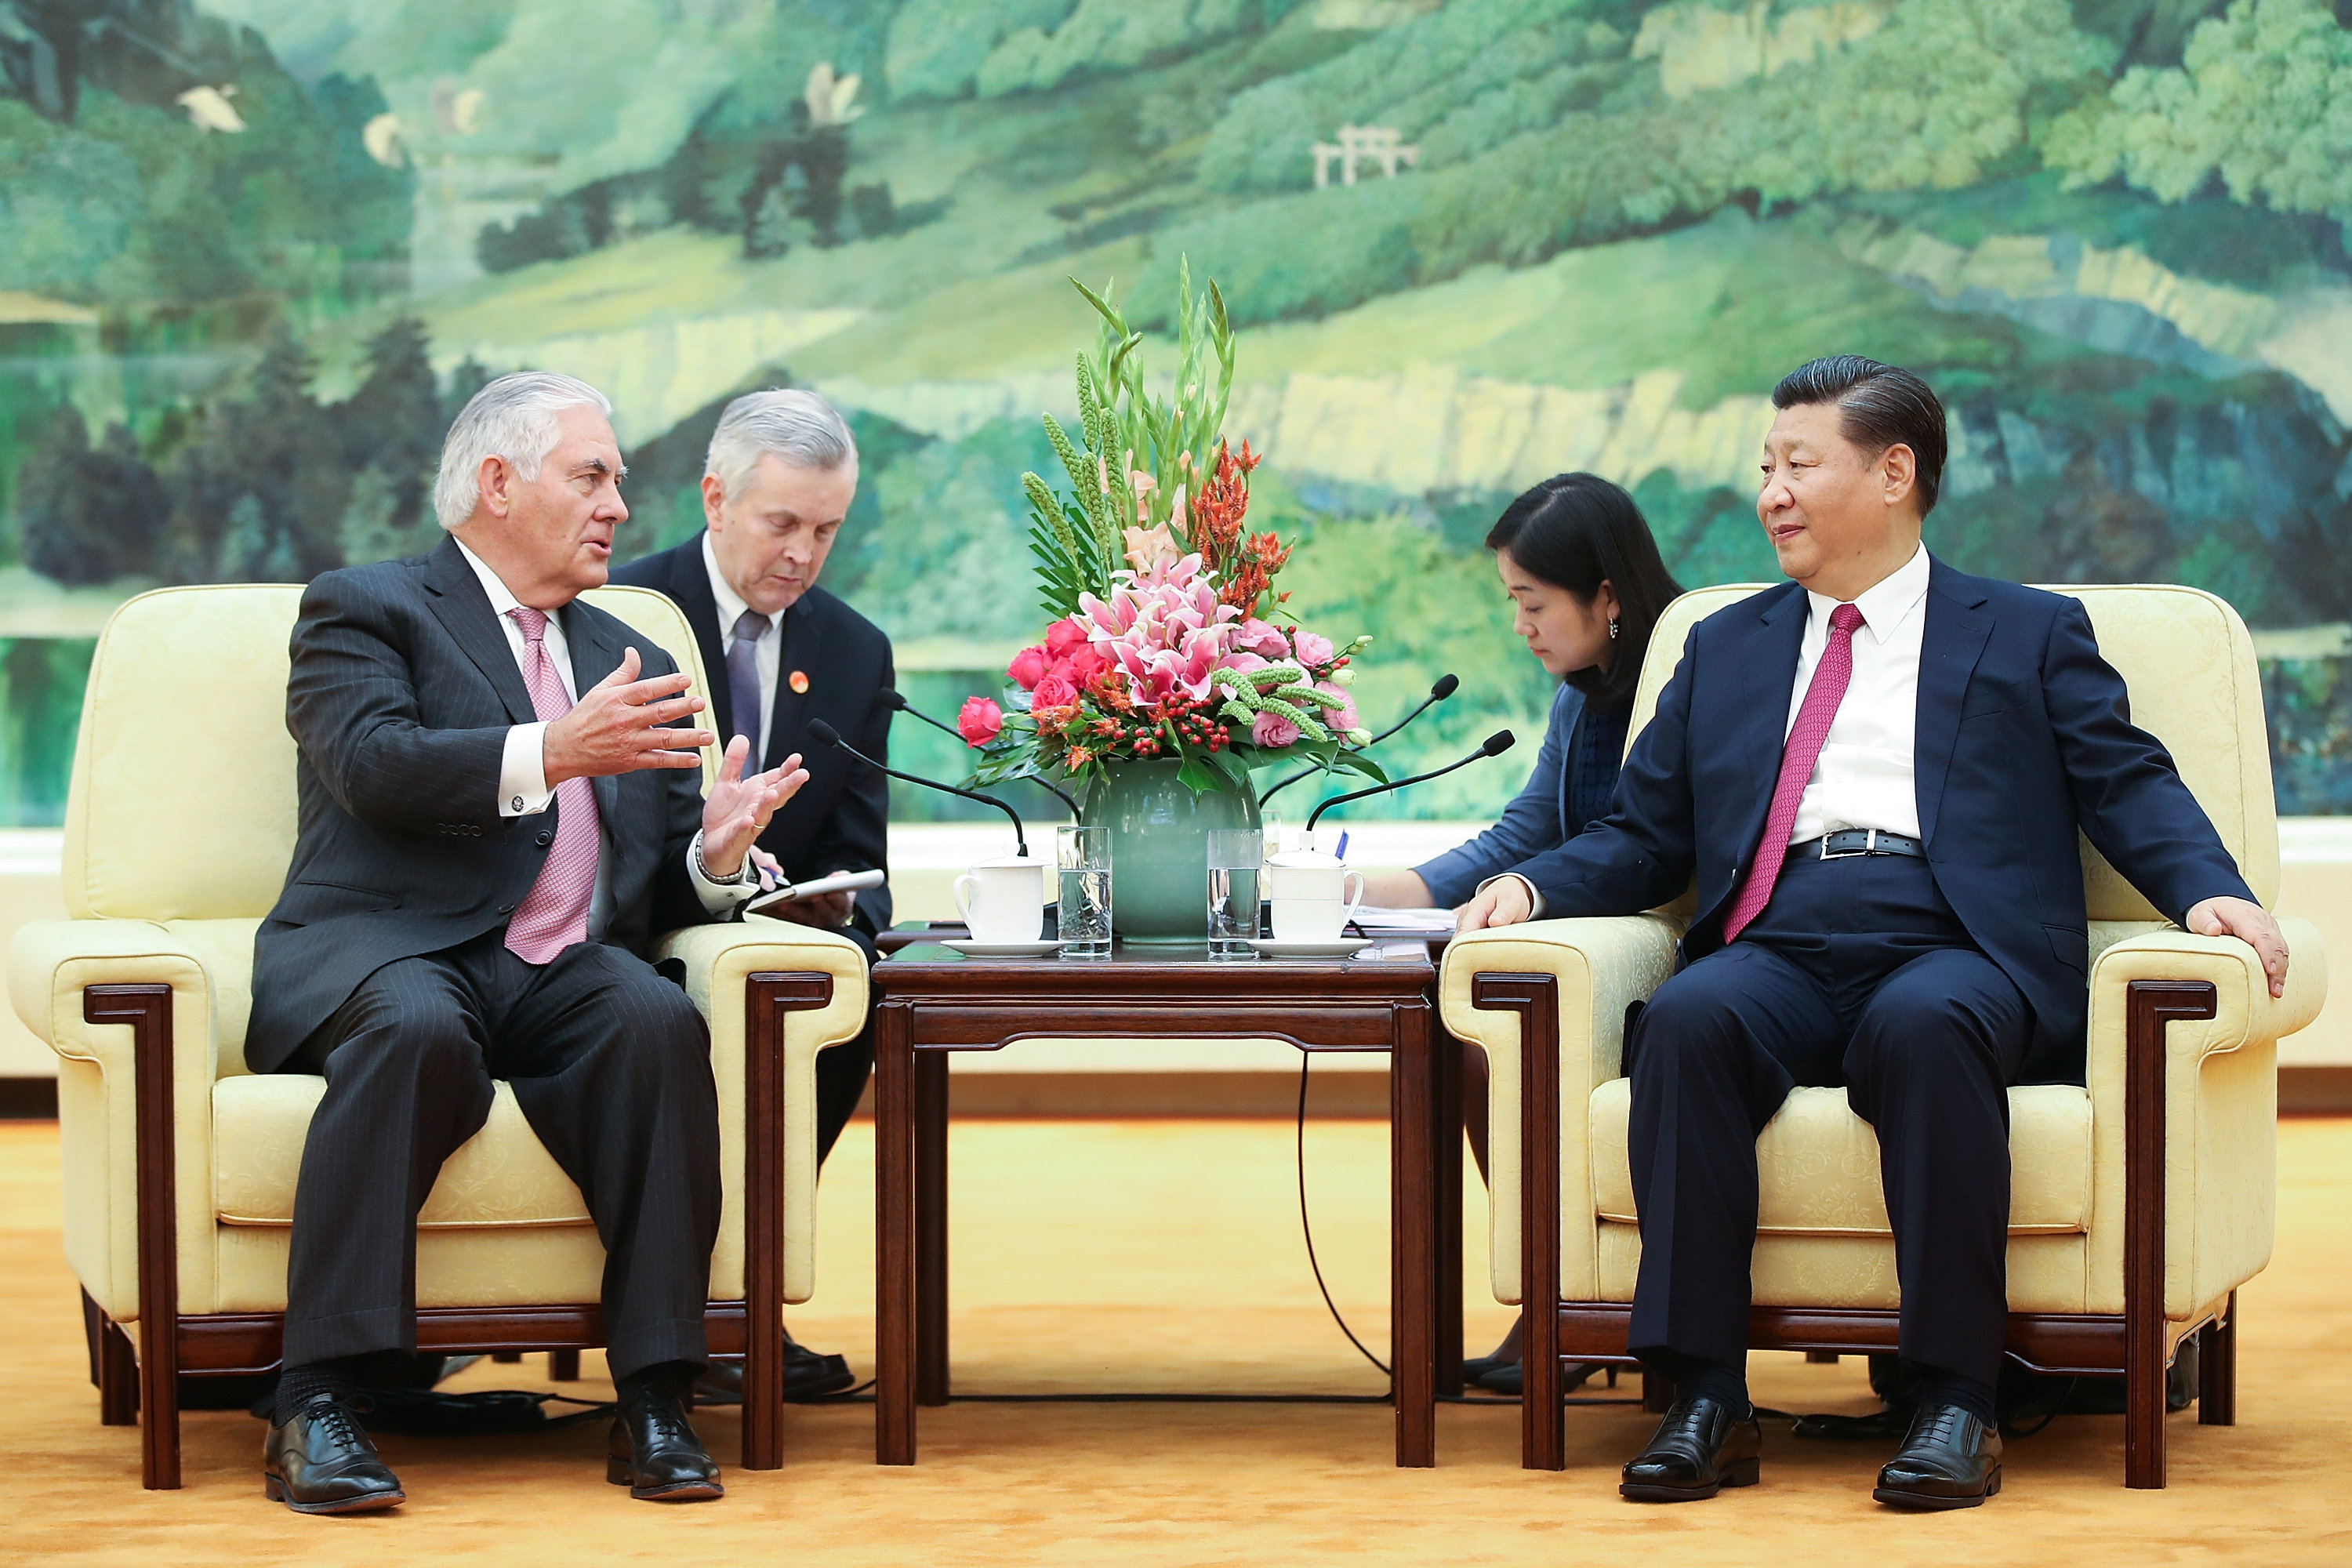 تيلرسون يتحدث إلى الرئيس الصينى خلال لقائهما فى بكين